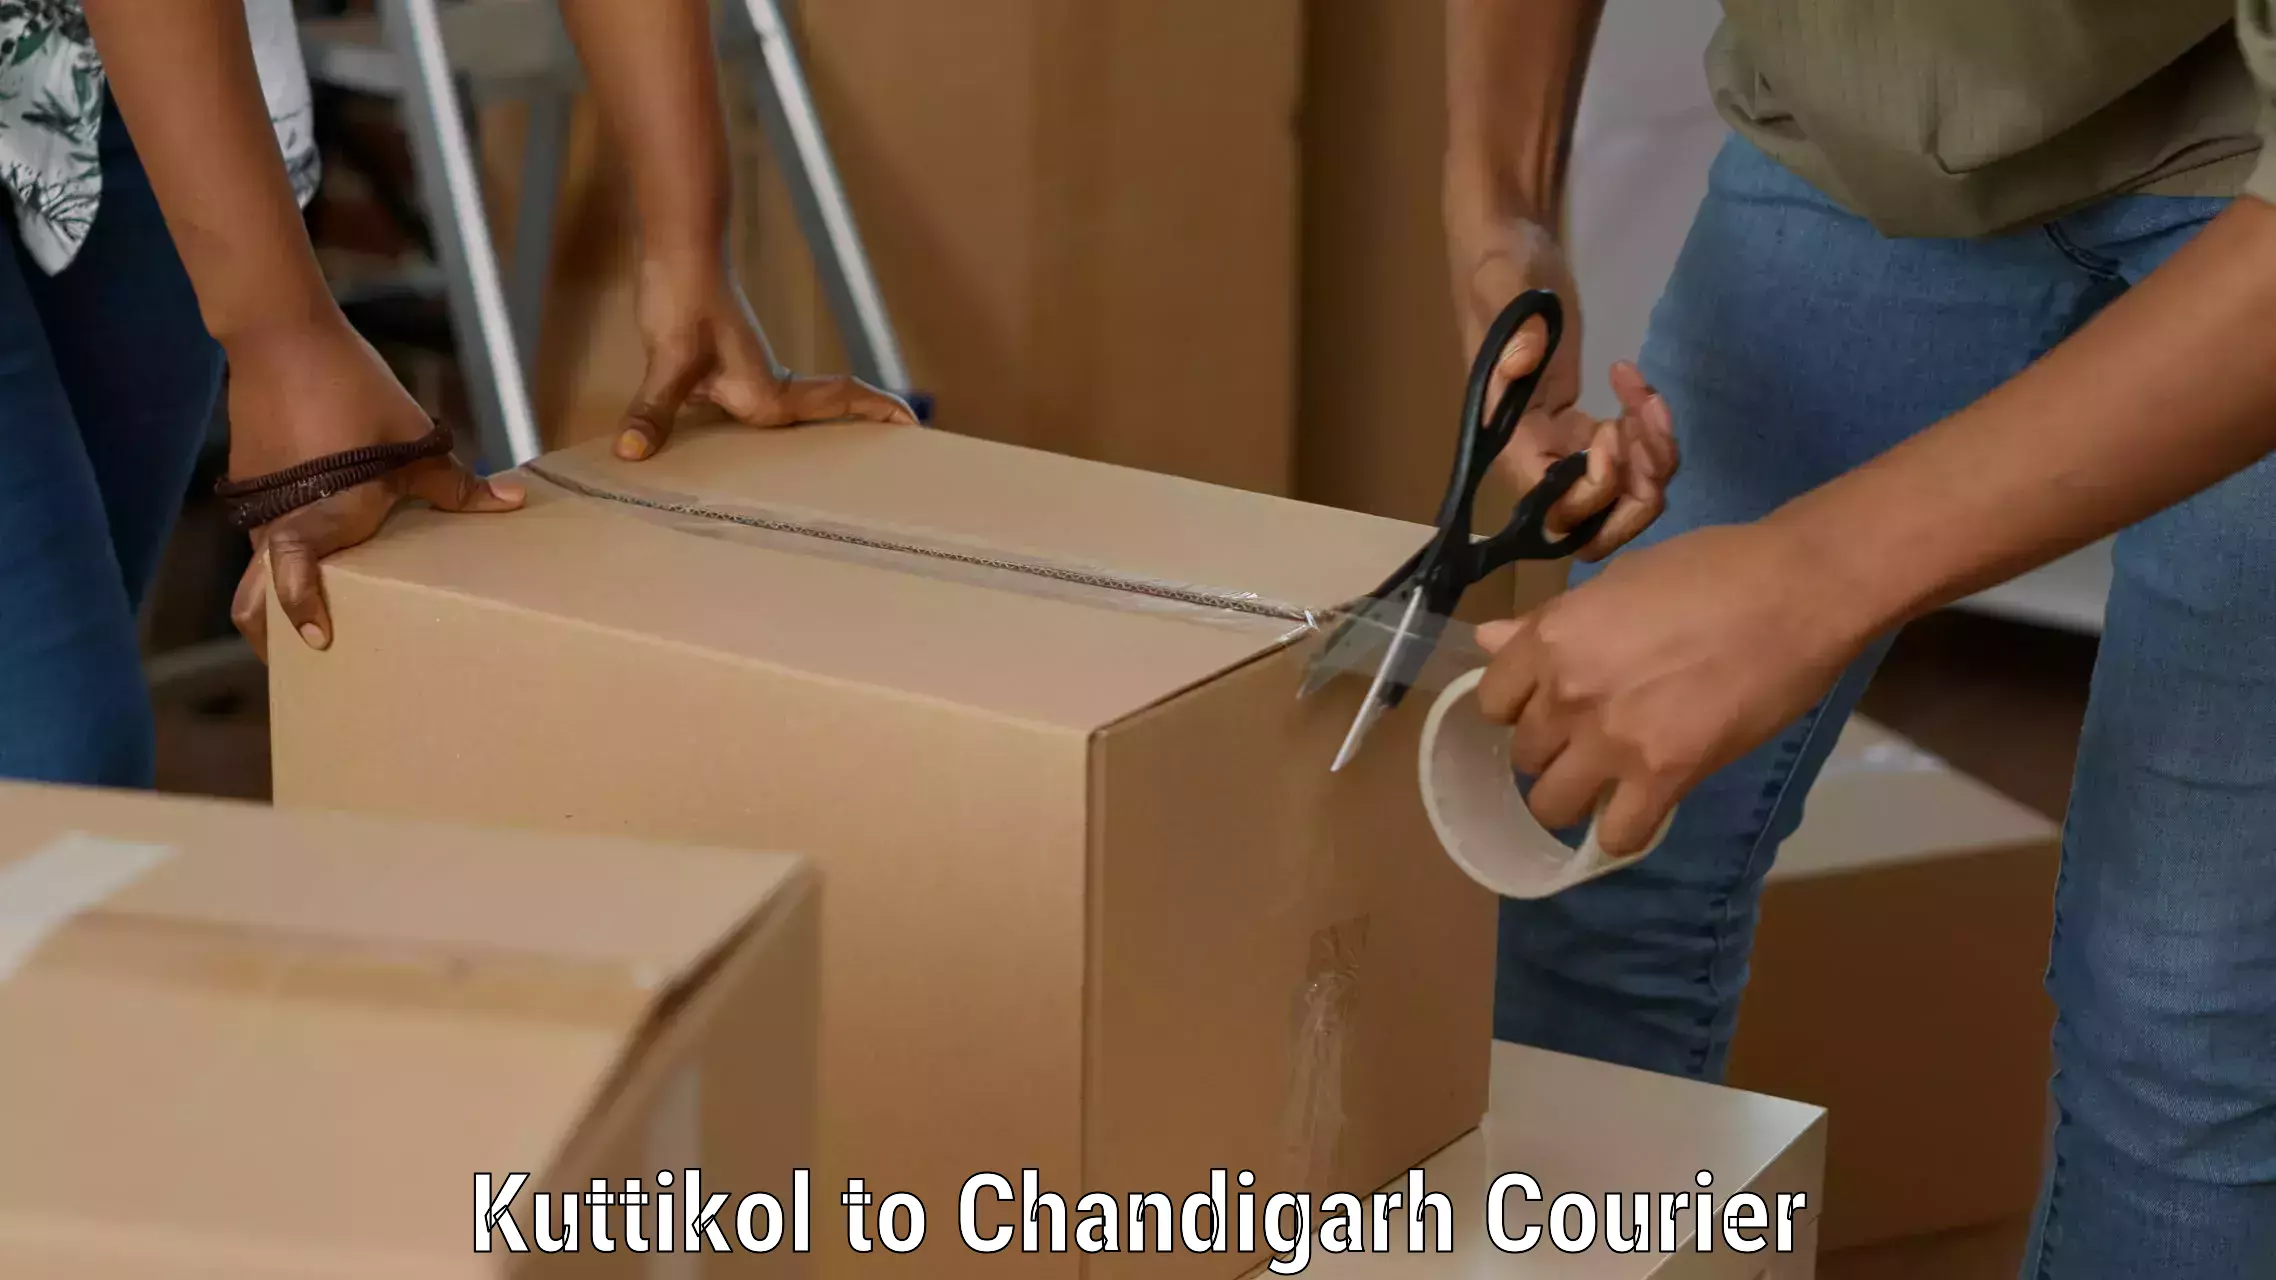 Cargo courier service Kuttikol to Chandigarh